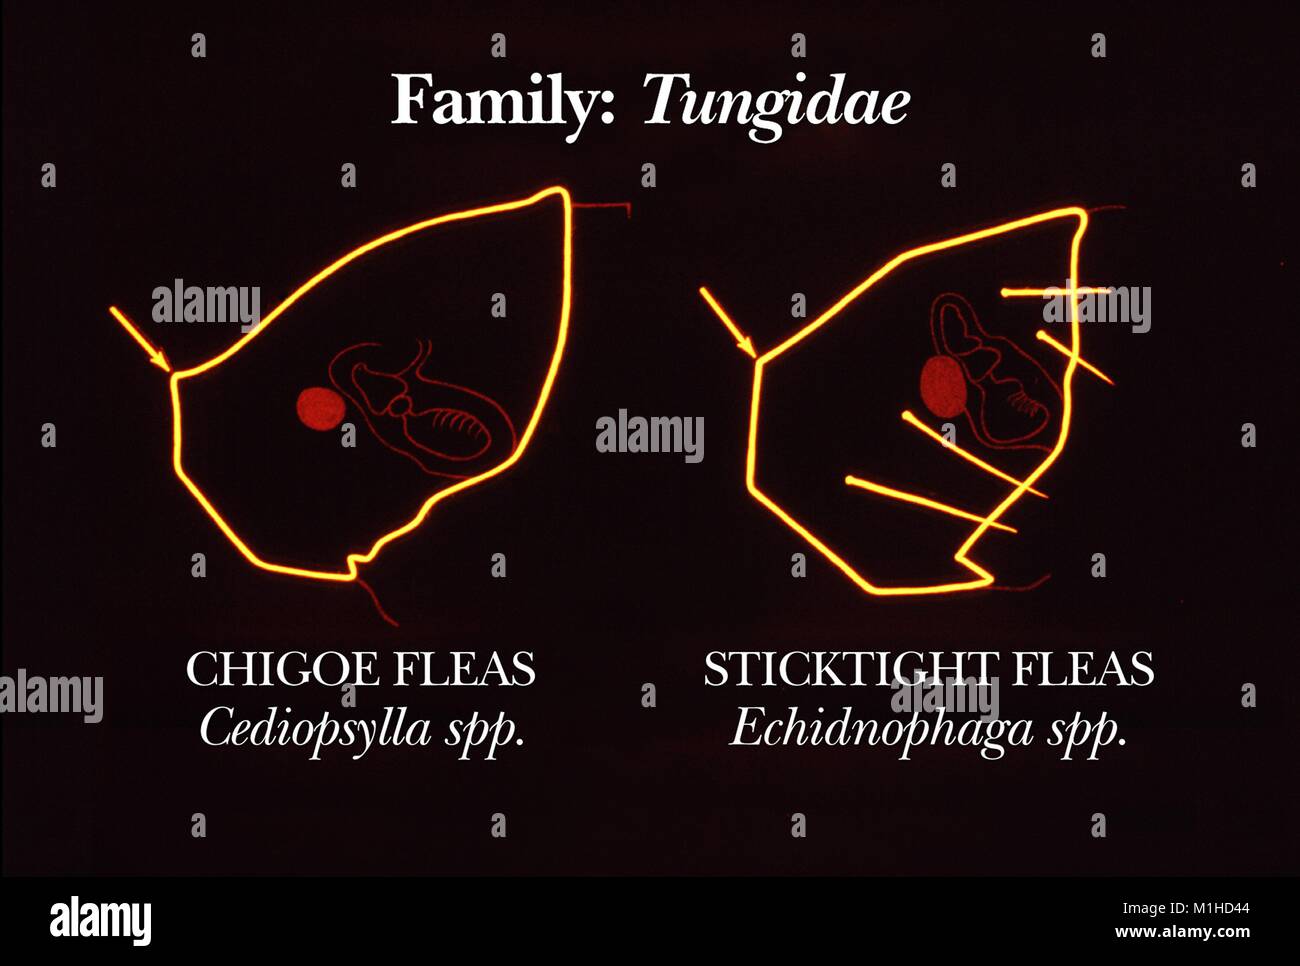 Illustrazione degli angoli in testa la morfologia della famiglia delle pulci Tungidae con i suoi due specie chigoe (Cediopsylla) e sticktight (Echidnophaga) specie, 1976. Immagine cortesia CDC. () Foto Stock